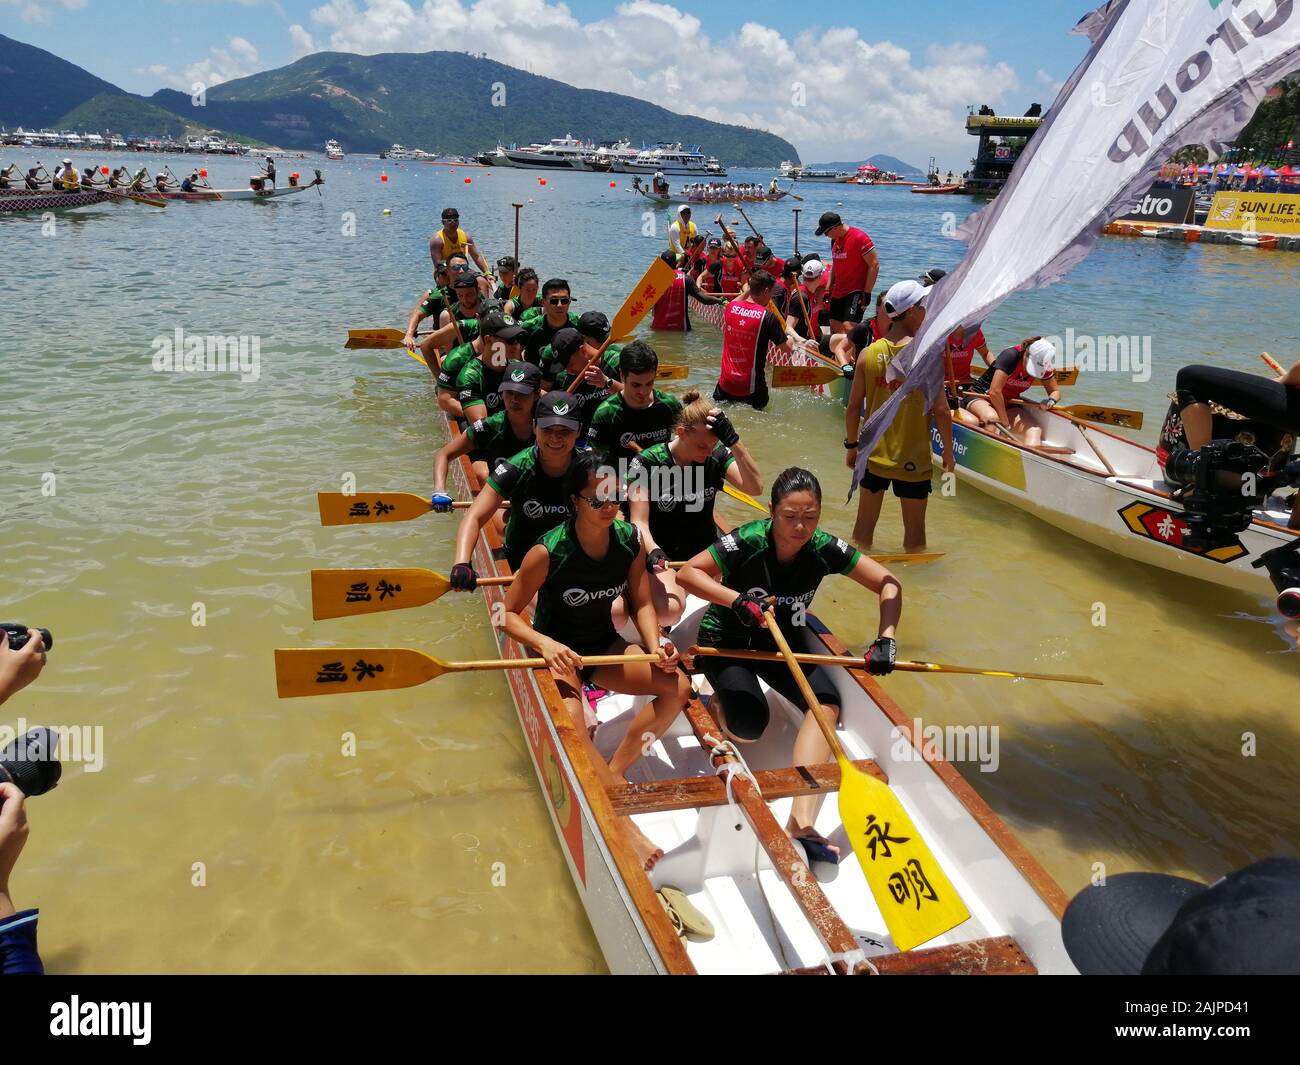 Le Festival Tuen Ng (Dragon Boat Festival) à Stanley, Hong Kong Banque D'Images